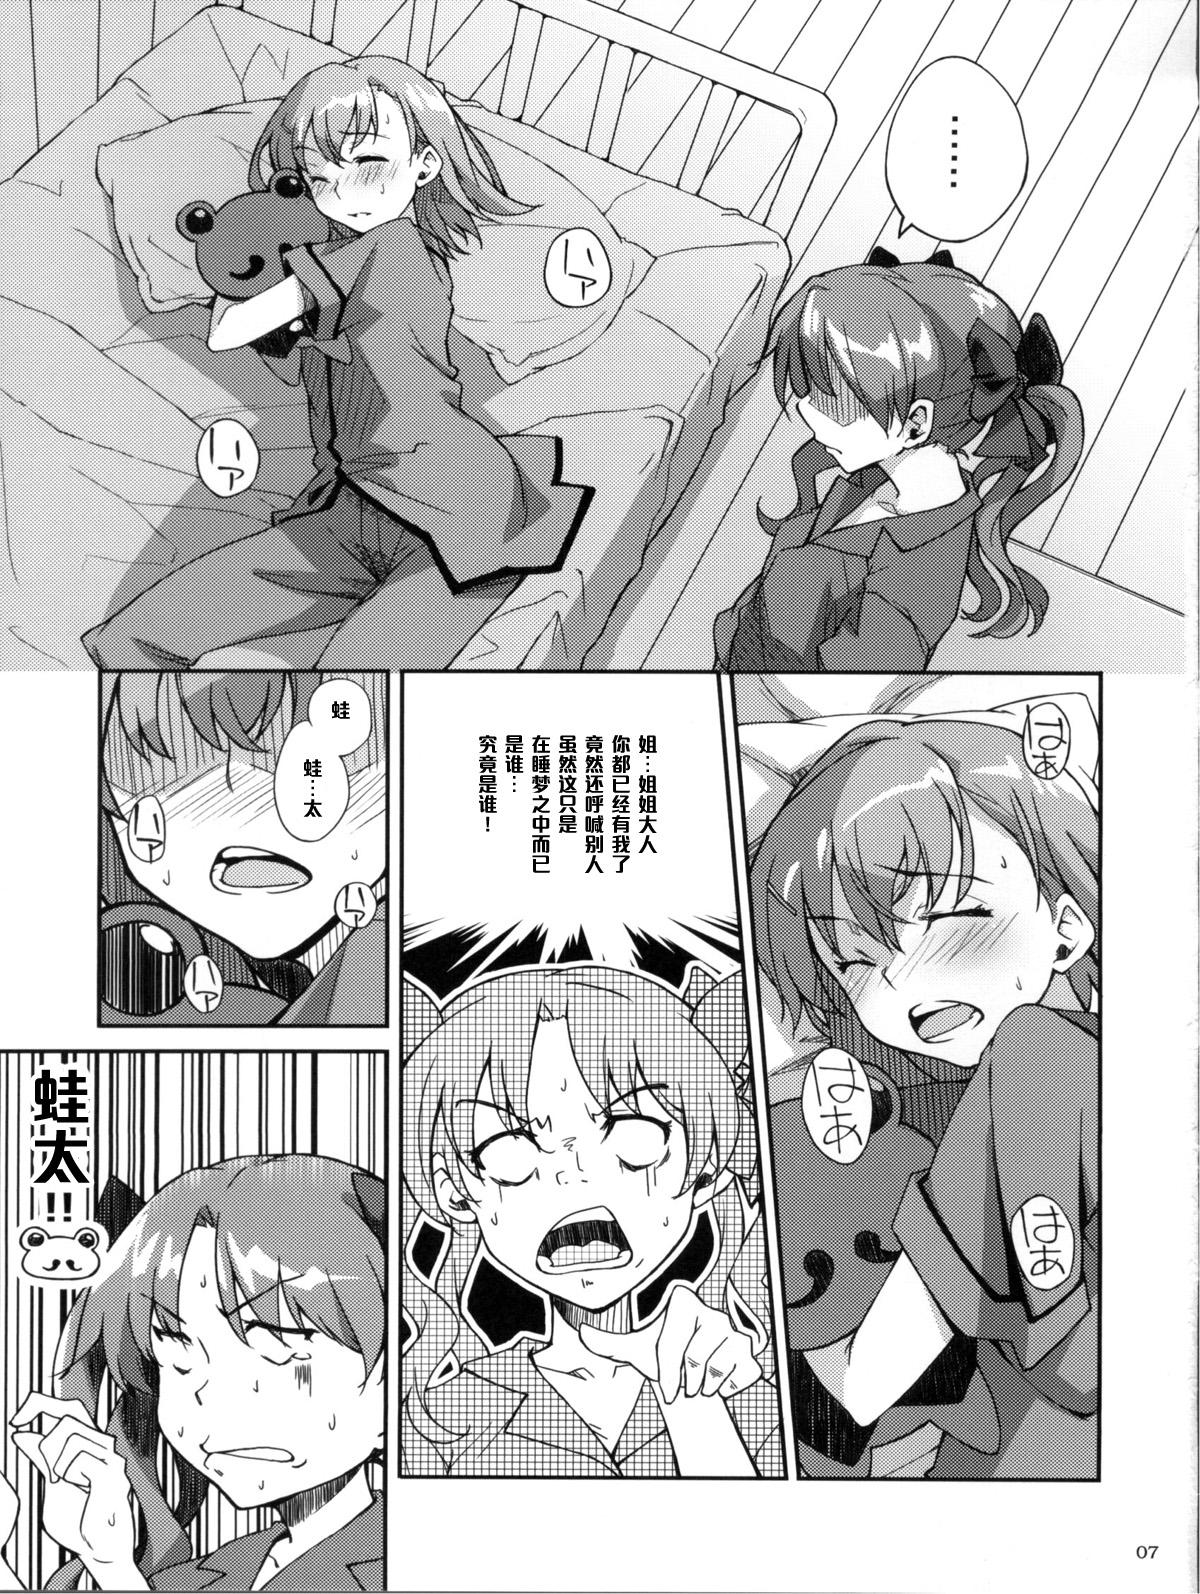 Horny Desu no!! 2 - Toaru kagaku no railgun Amadora - Page 7